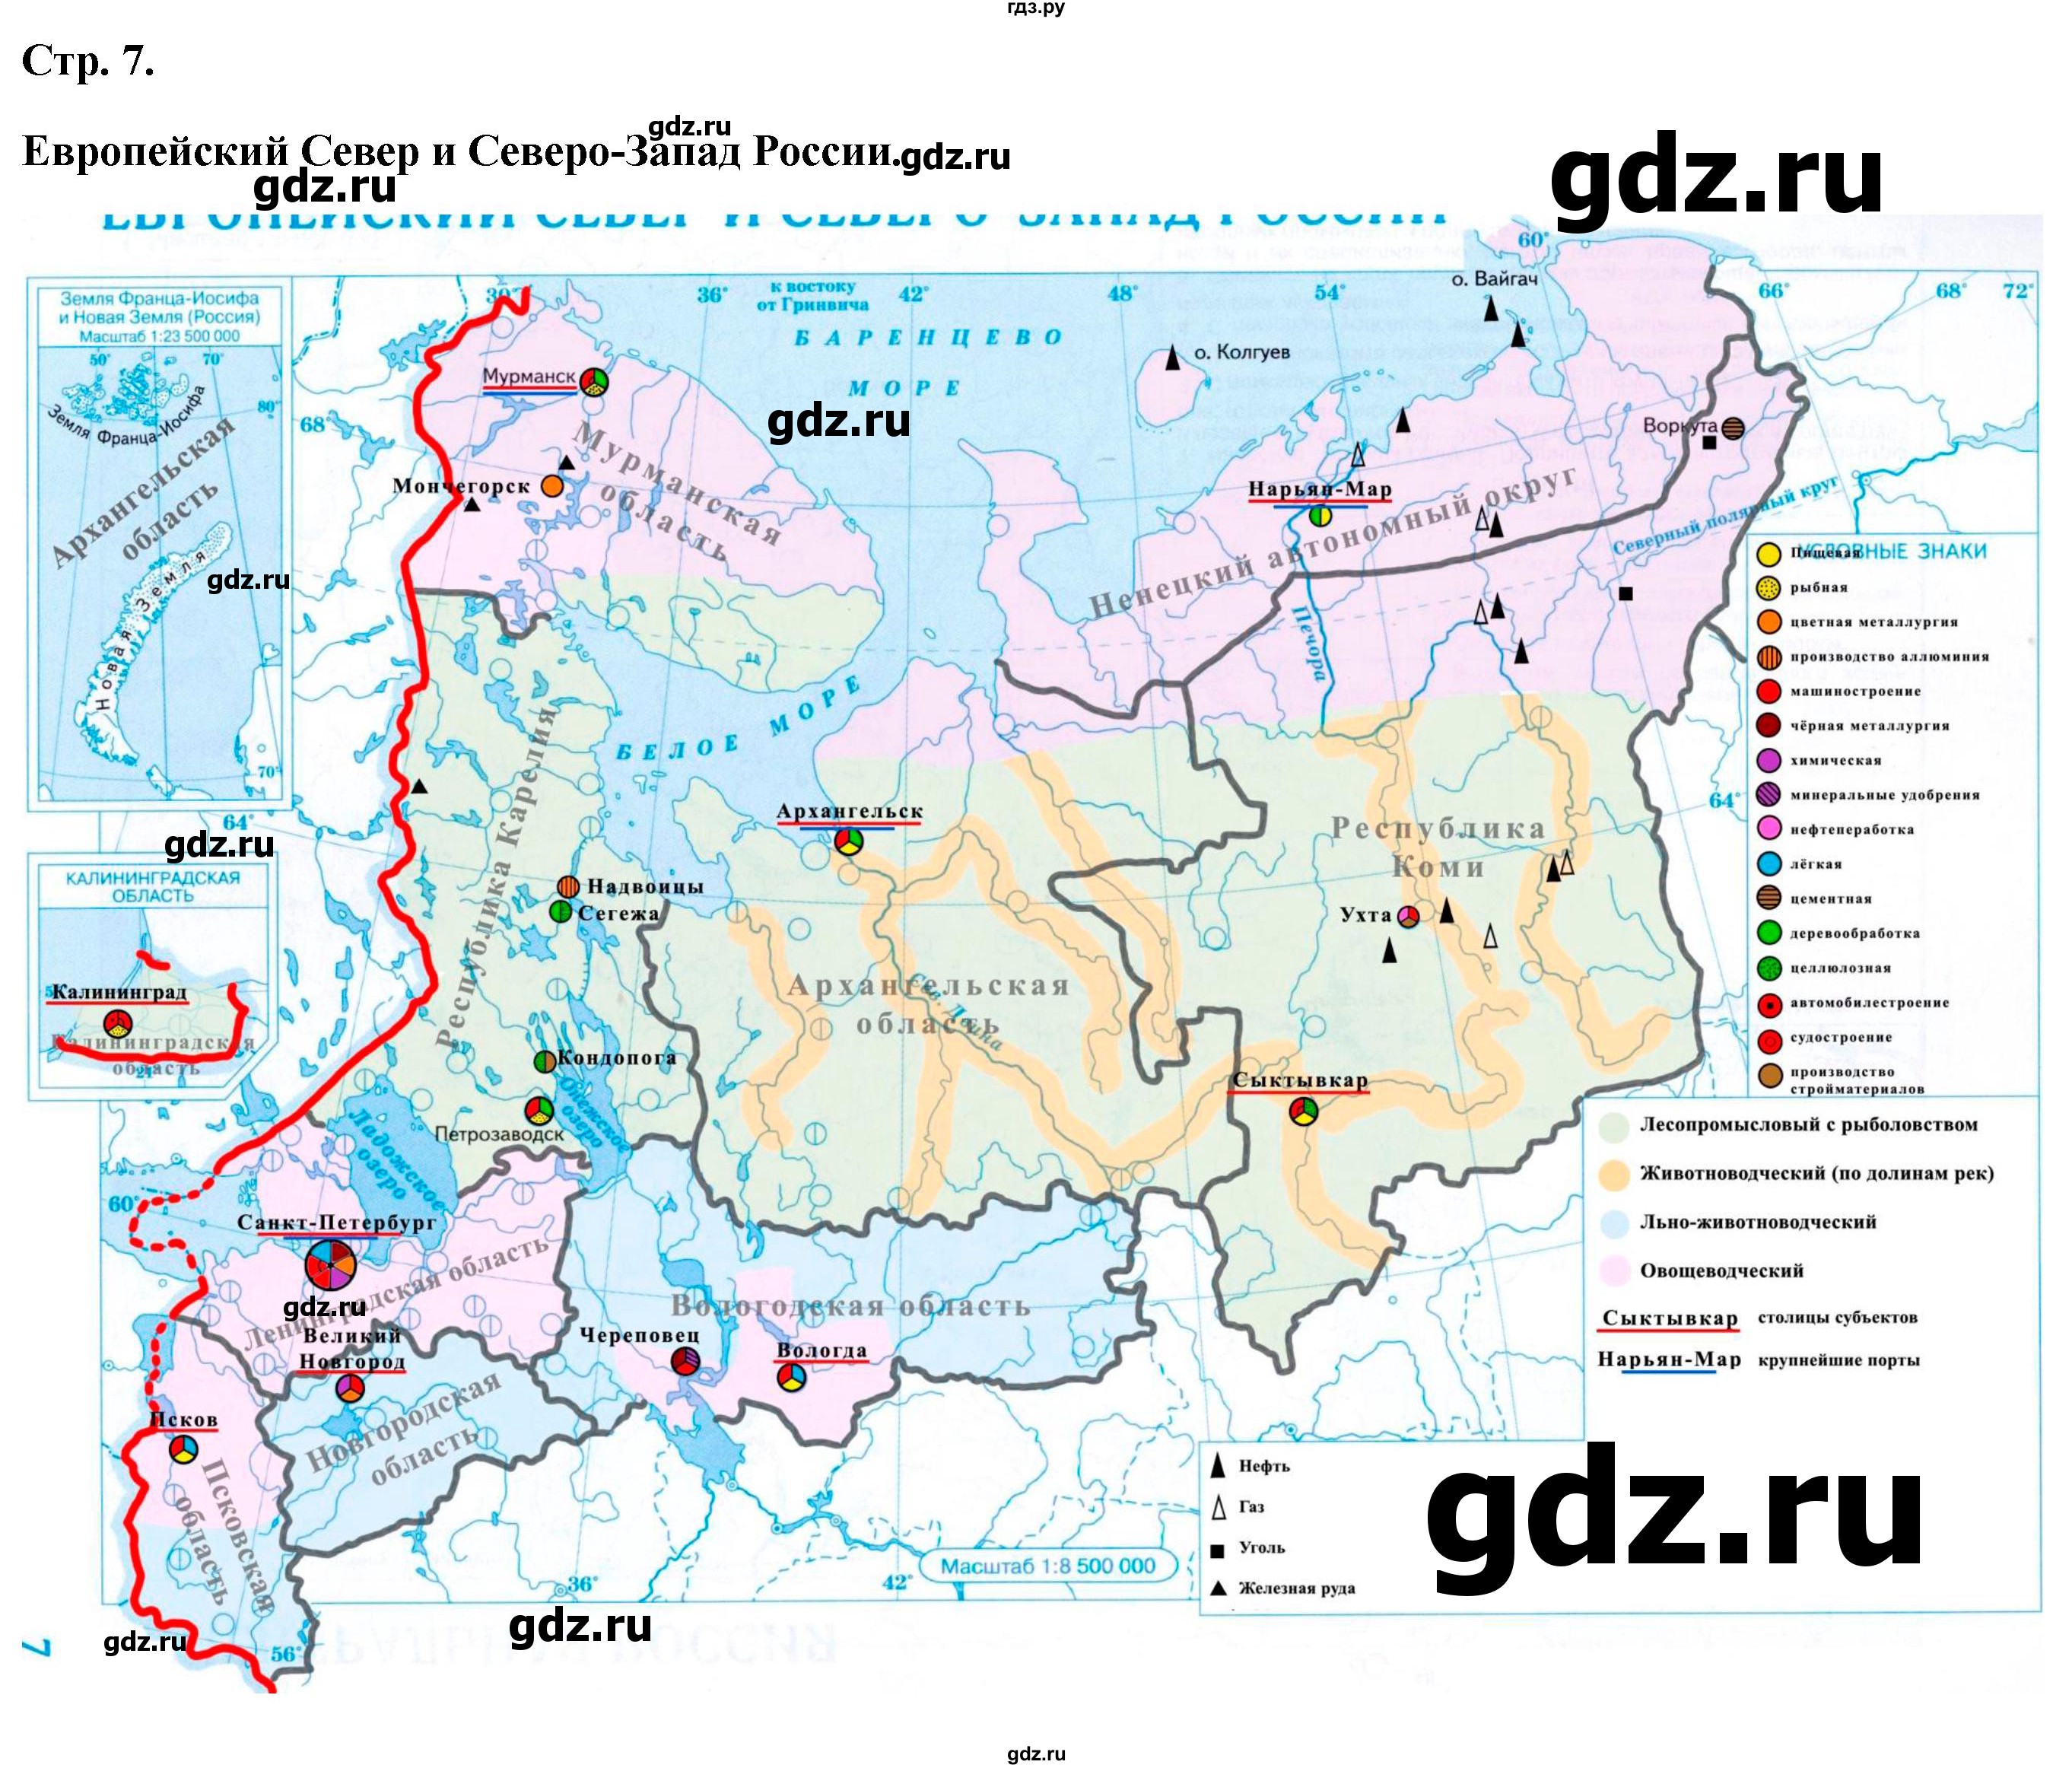 ГДЗ контурные карты стр.7 география 9 класс атлас с контурными картамиПриваловский, Курбский